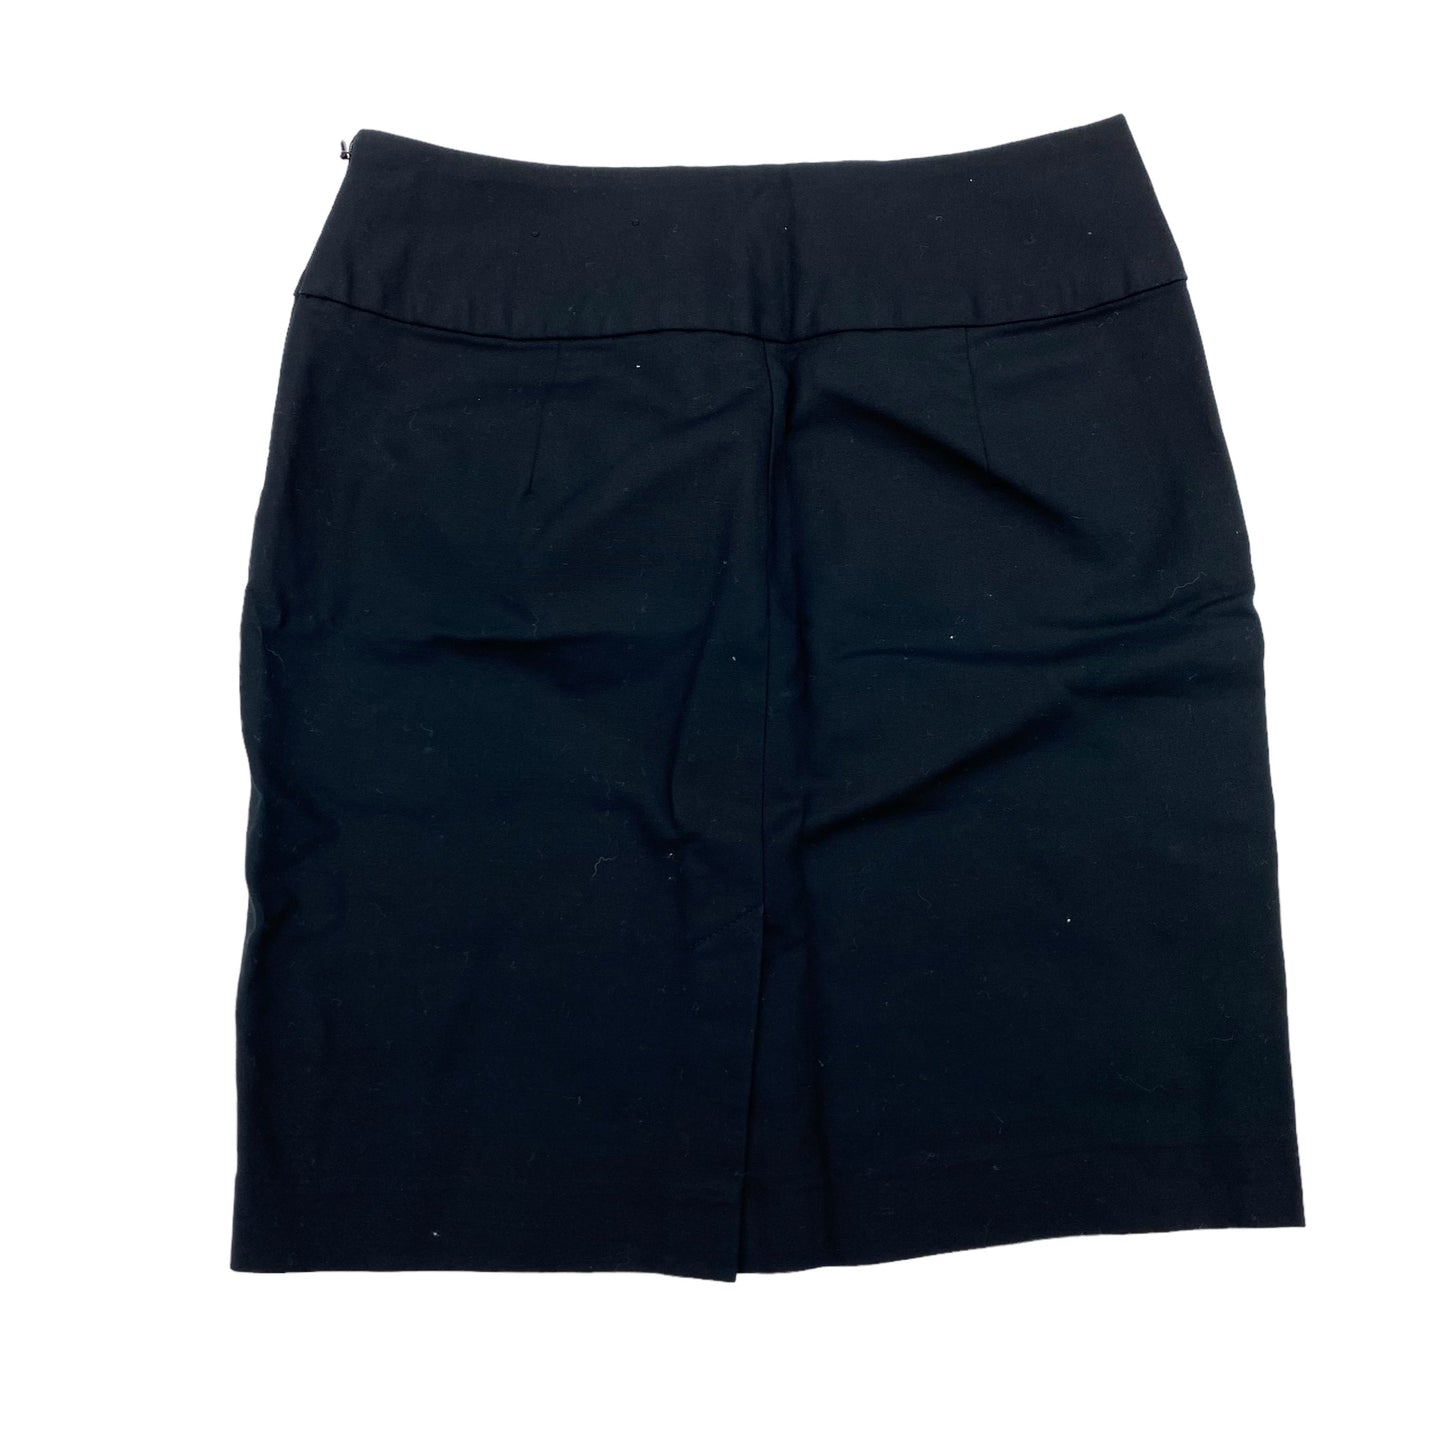 Black Skirt Mini & Short Banana Republic, Size 2